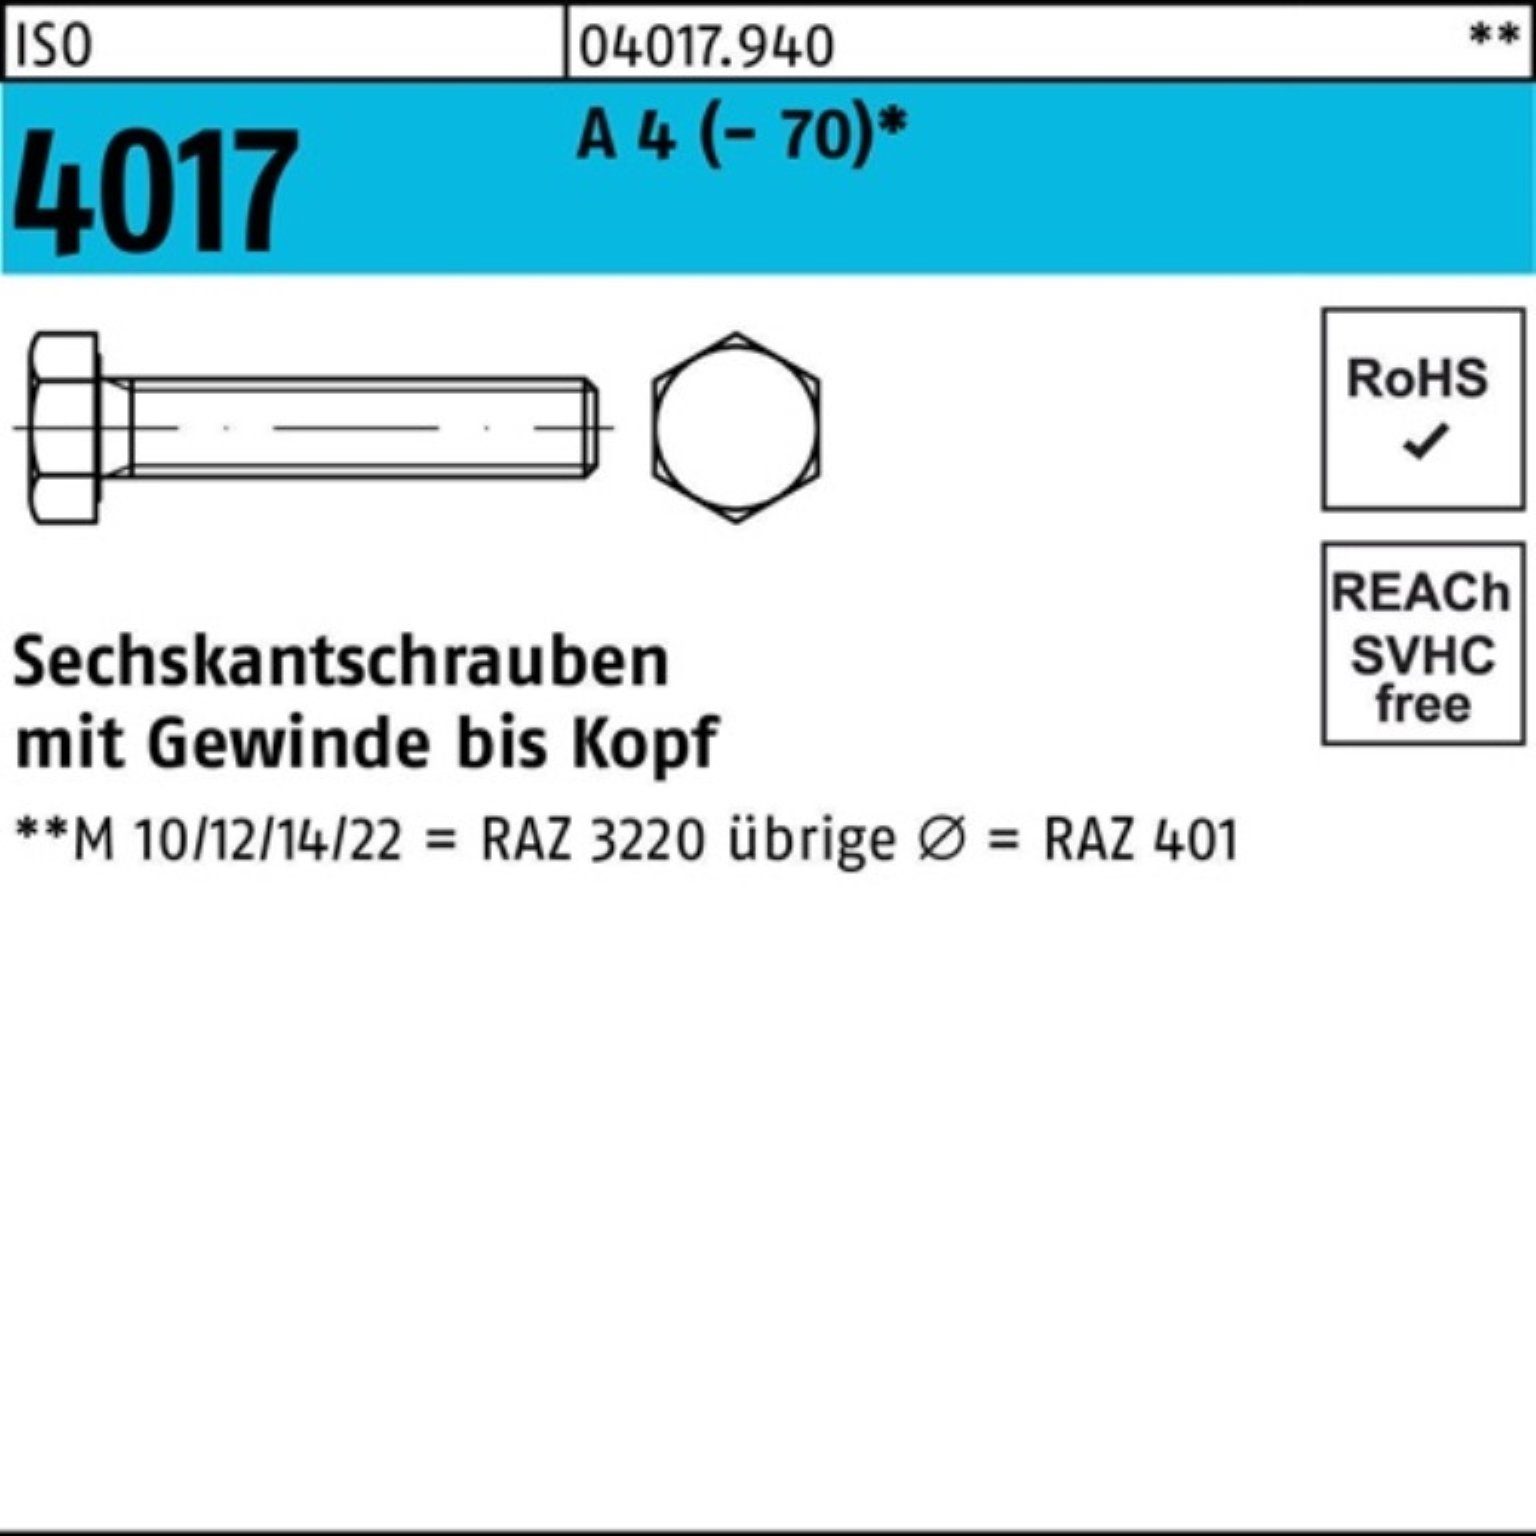 Pack 4 A 100er (70) Sechskantschraube VG 200 ISO M8x Stück Bufab I Sechskantschraube 4017 1